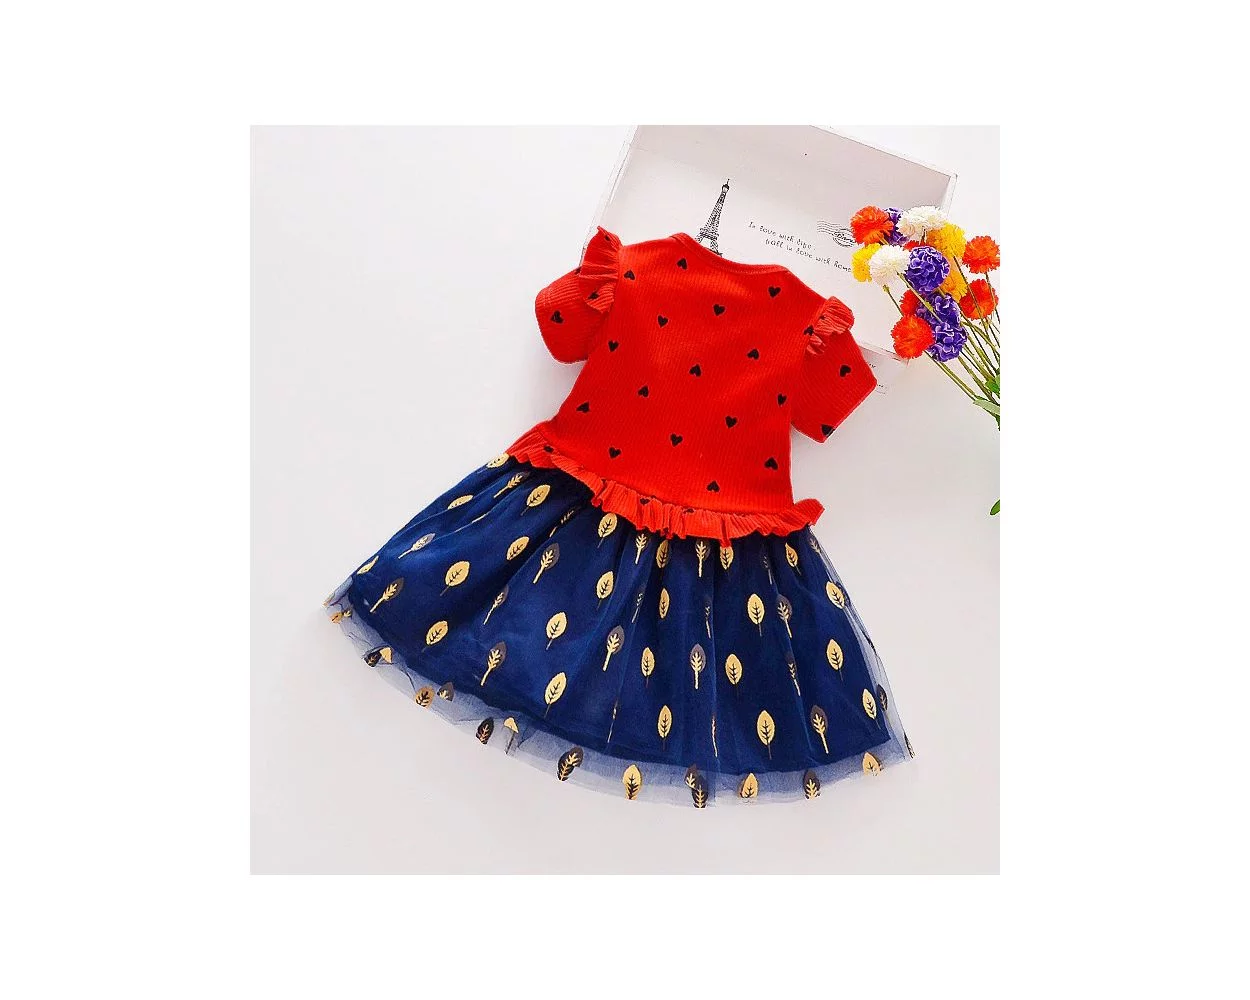 Pin by Rubina Khan on Quick Saves | Dresses kids girl, Baby girl dress  design, Kids designer dresses